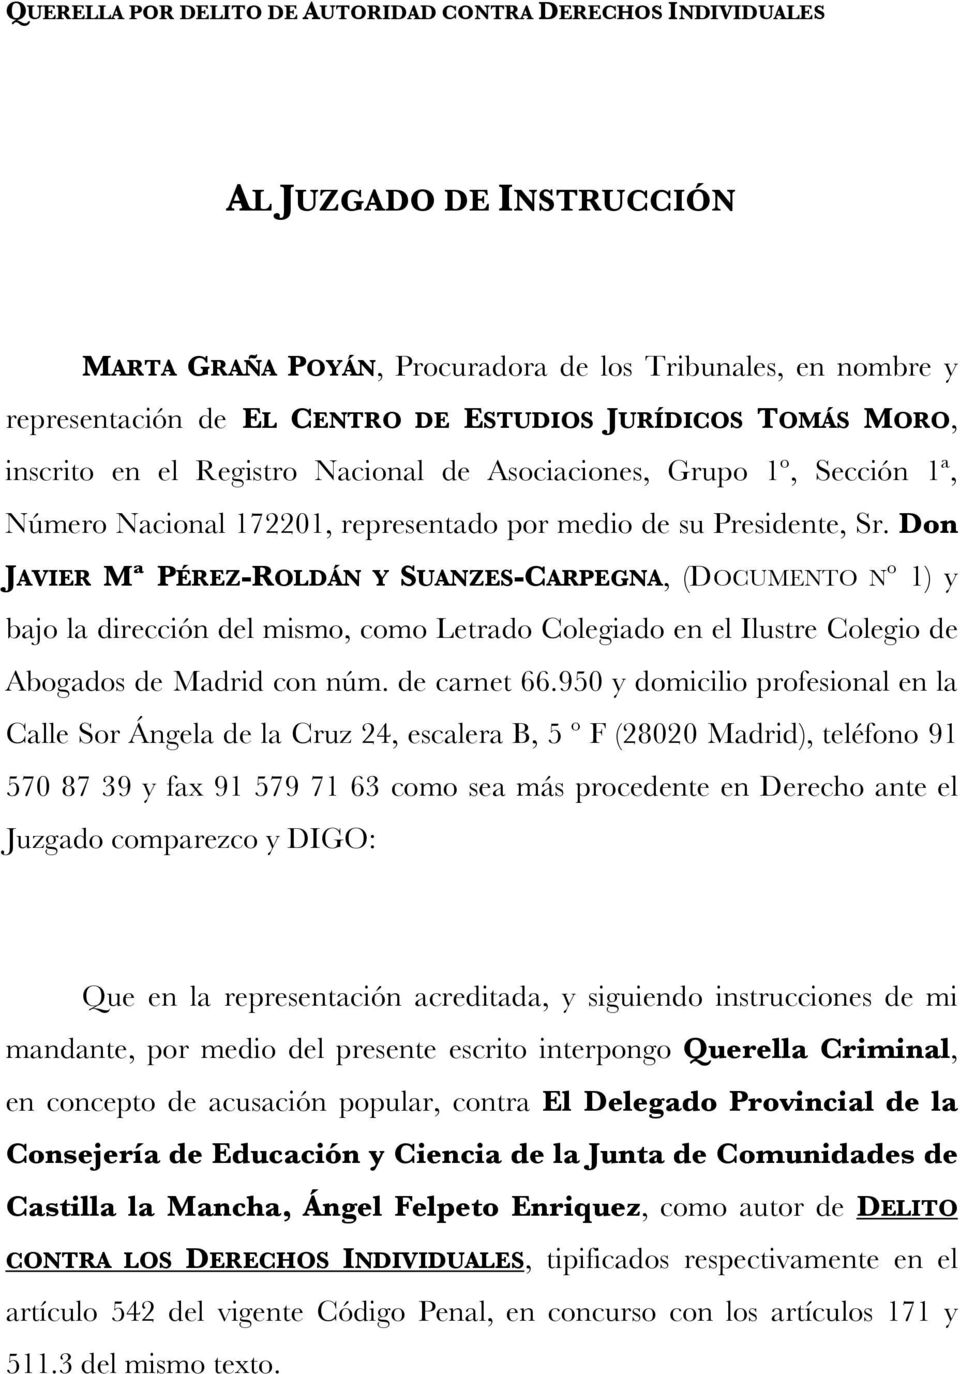 Don JAVIER Mª PÉREZ-ROLDÁN Y SUANZES-CARPEGNA, (DOCUMENTO Nº 1) y bajo la dirección del mismo, como Letrado Colegiado en el Ilustre Colegio de Abogados de Madrid con núm. de carnet 66.